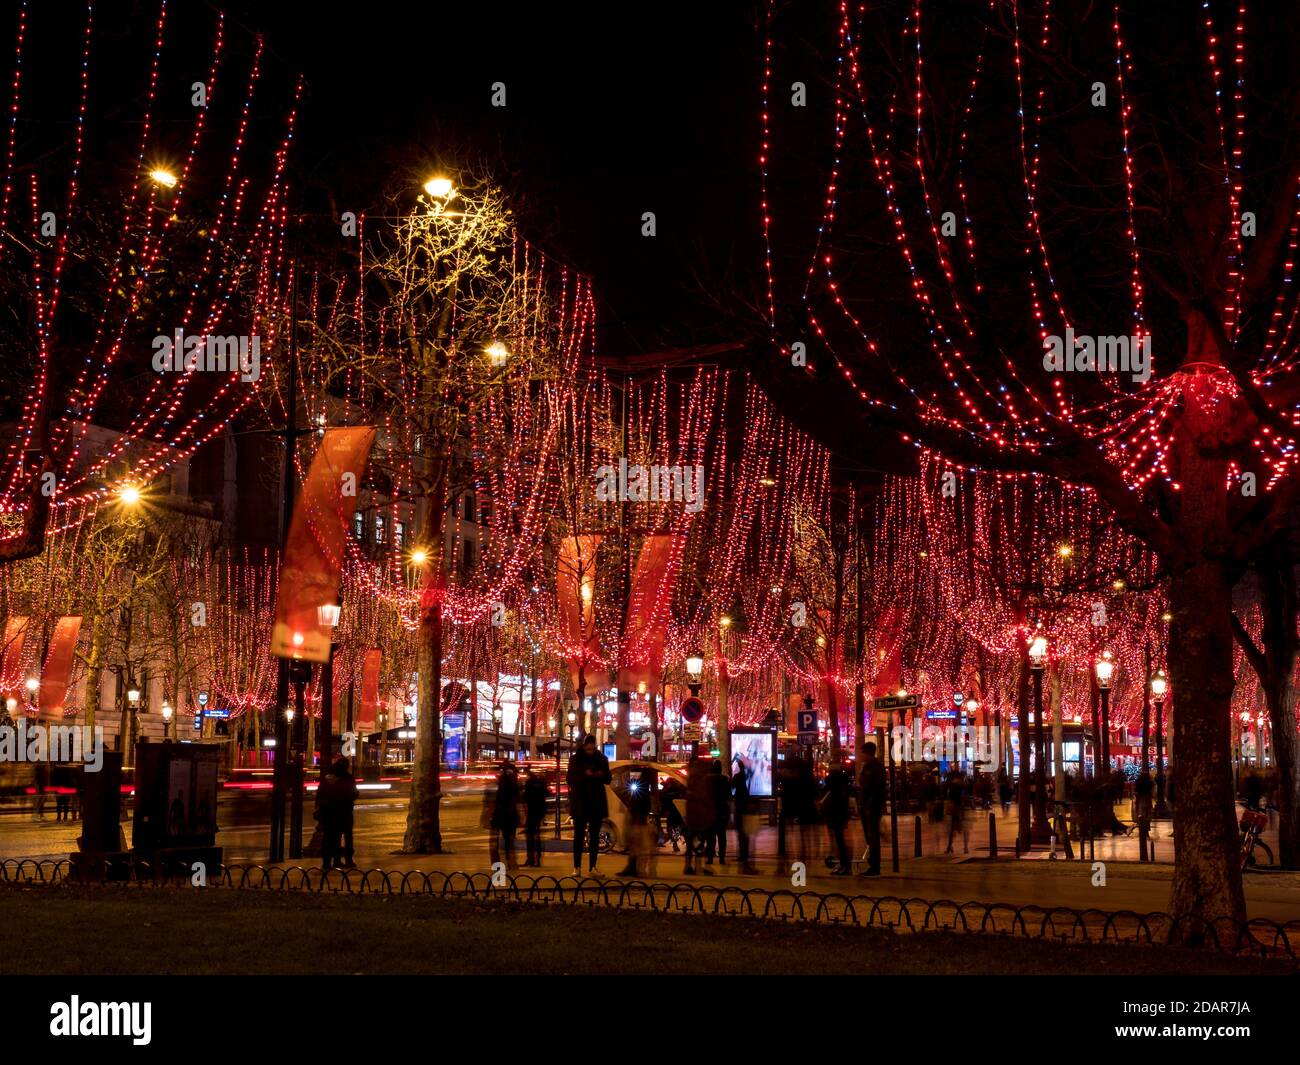 Photo nocturne de l'illumination de Noël de l'avenue des champs-Elysées, Paris, France Banque D'Images